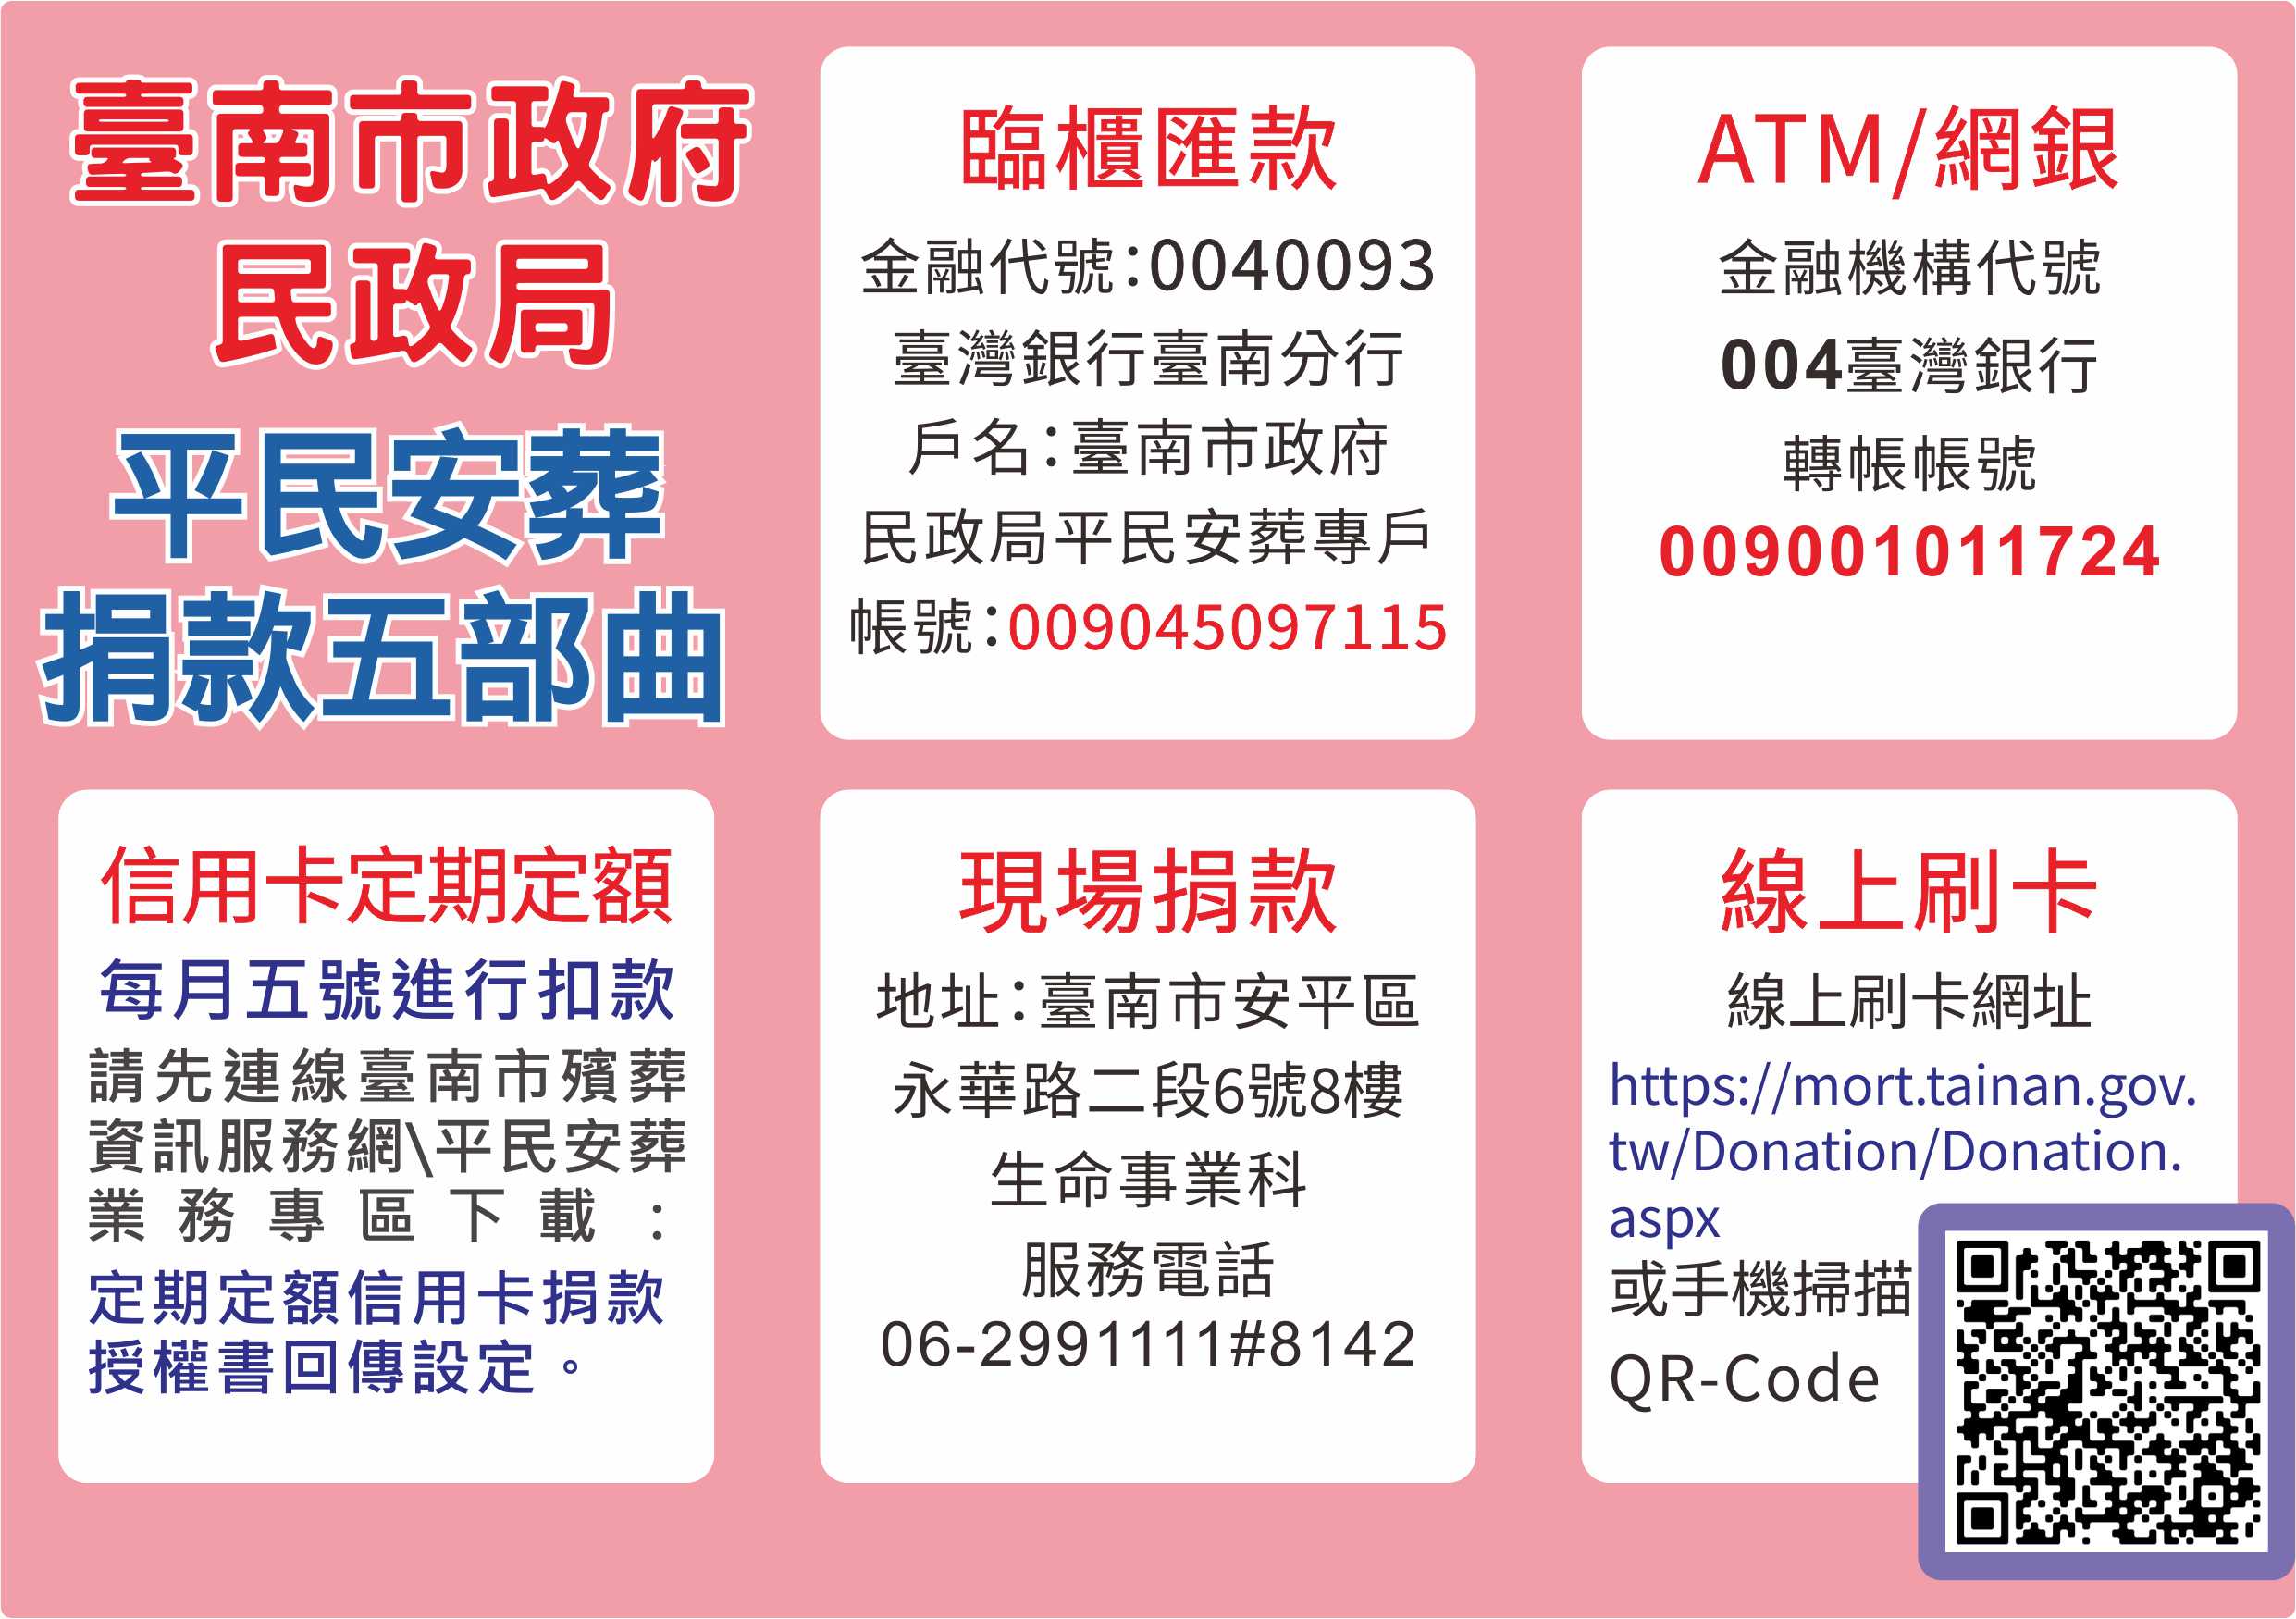 臺南市政府民政局平民安葬捐款五部曲：臨櫃匯款、ATM/網銀、信用卡定期定額、現場捐款、線上刷卡